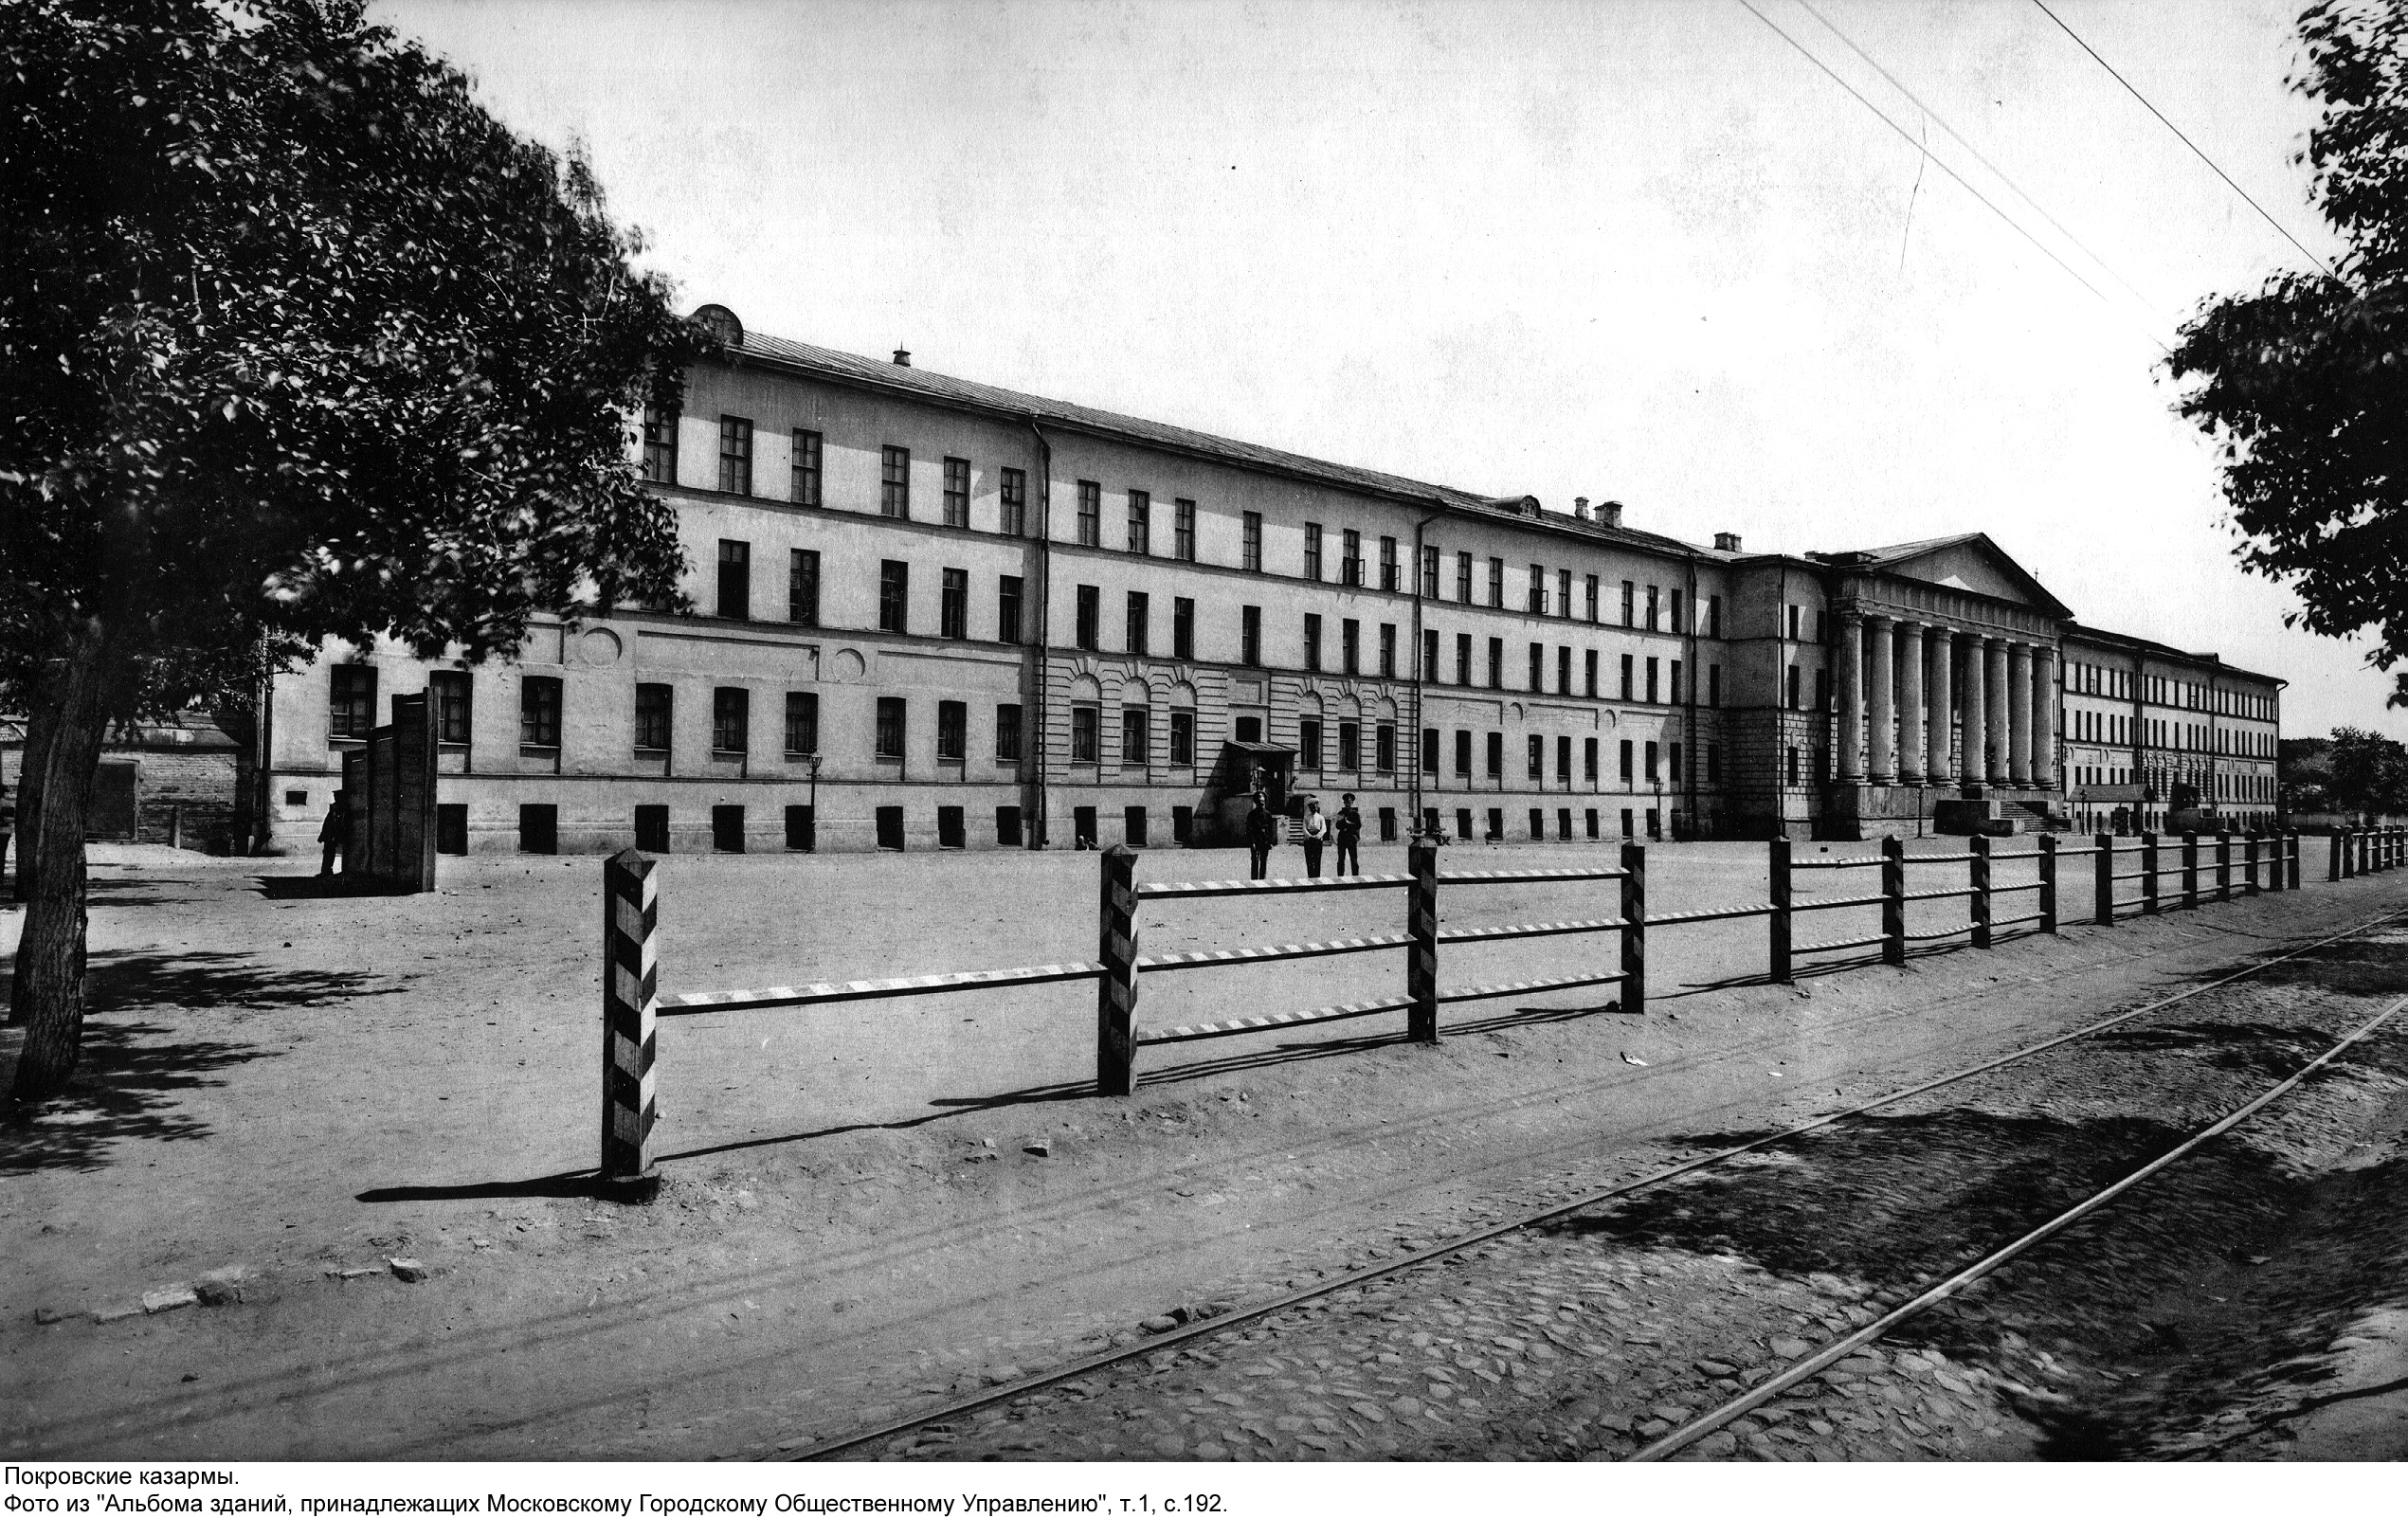 Pokrovskie barracks